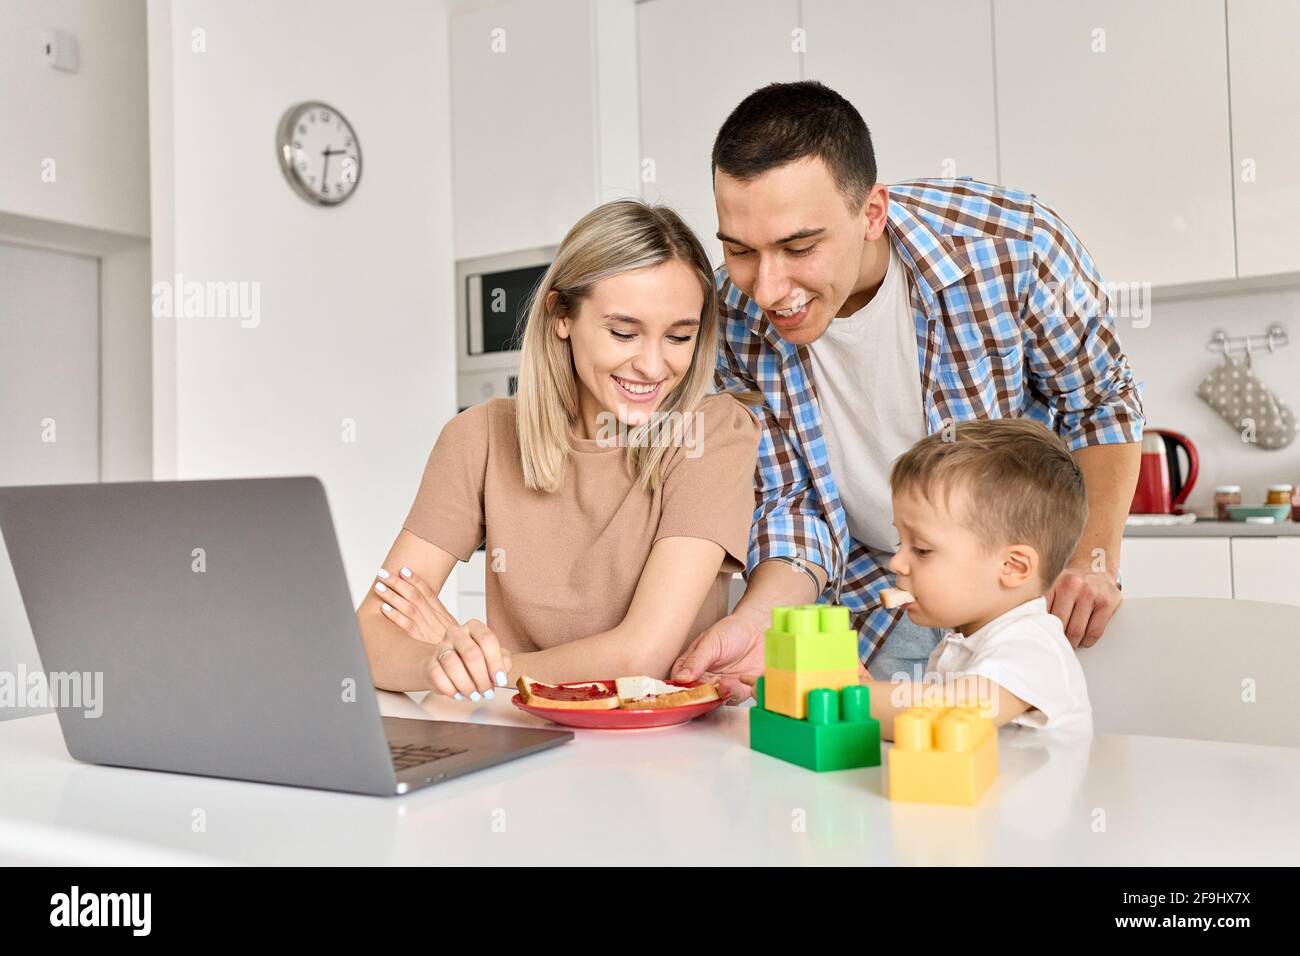 Une jeune famille heureuse avec un enfant, son, qui mange des toasts en utilisant un ordinateur portable dans la cuisine. Banque D'Images